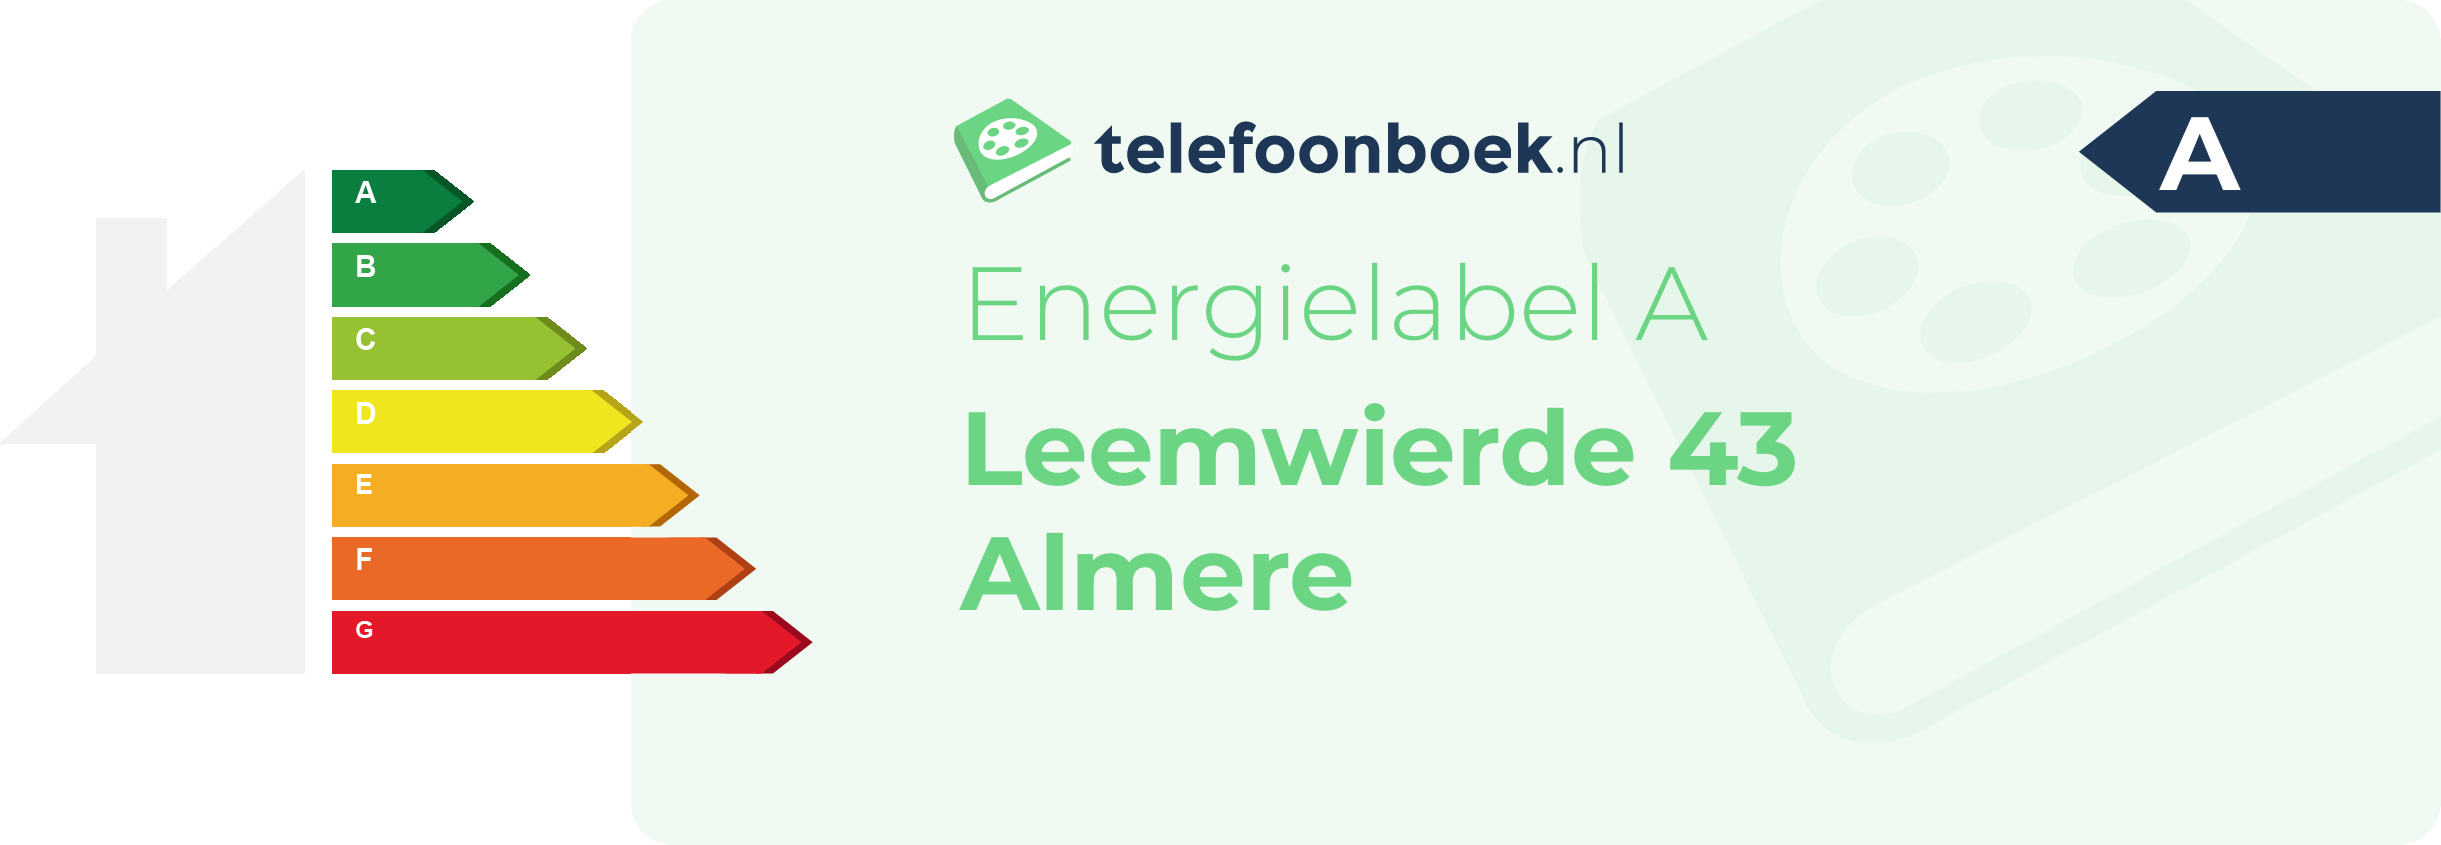 Energielabel Leemwierde 43 Almere